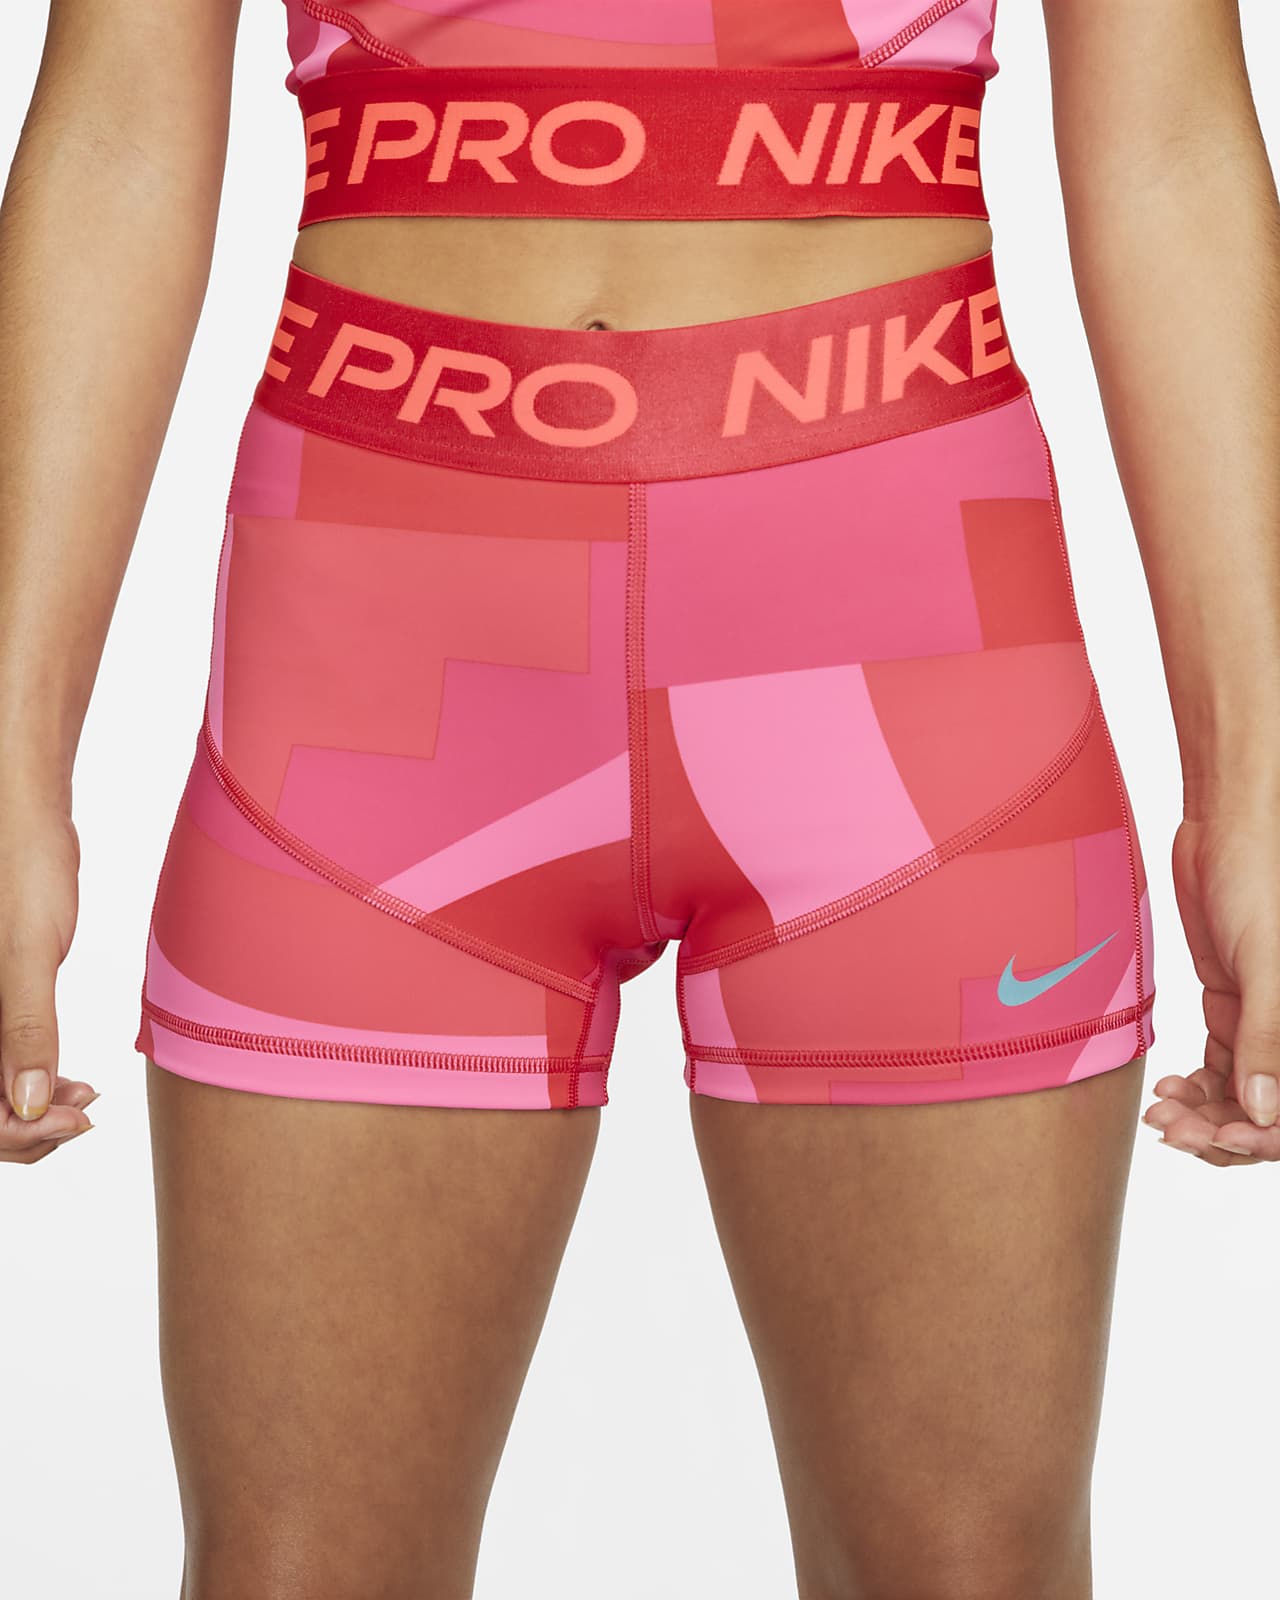 Nike pro shorts nudes